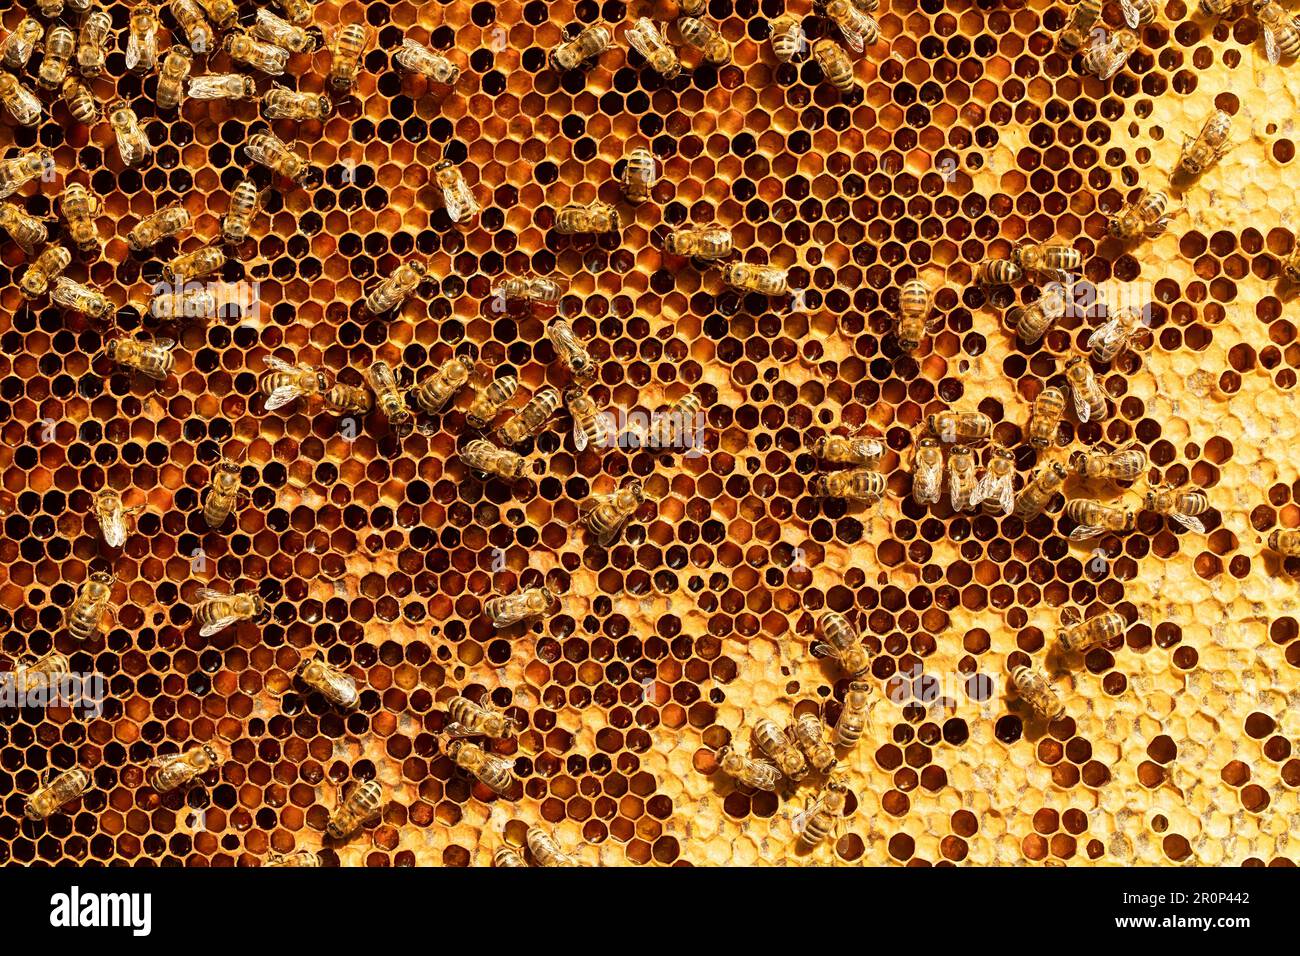 Ce cliché macro capture la structure complexe d'une colonie d'abeilles et son nid d'abeille. Les détails complexes de la ruche et des abeilles au travail sont en pleine discorde Banque D'Images